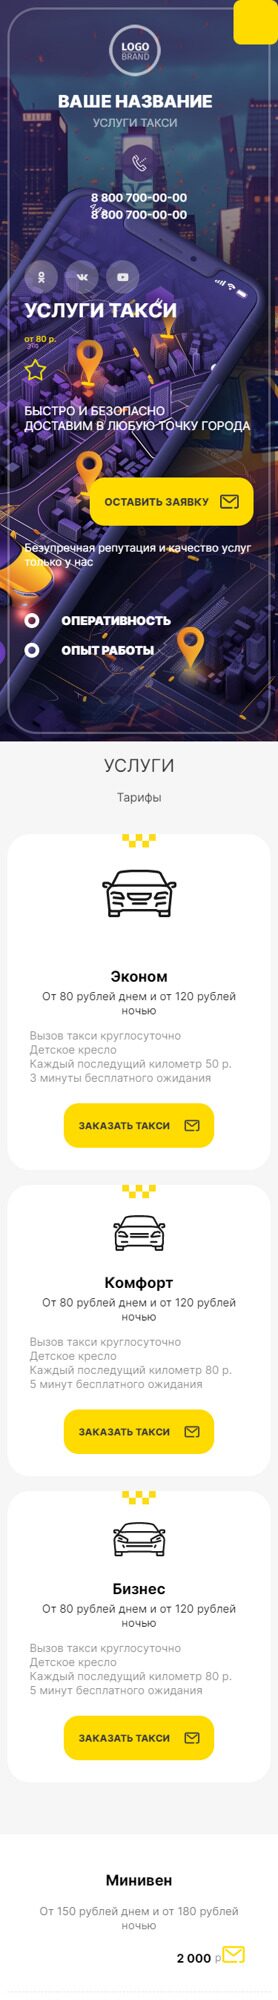 Готовый Сайт-Бизнес № 5932672 - Такси, пассажирские перевозки (Мобильная версия)